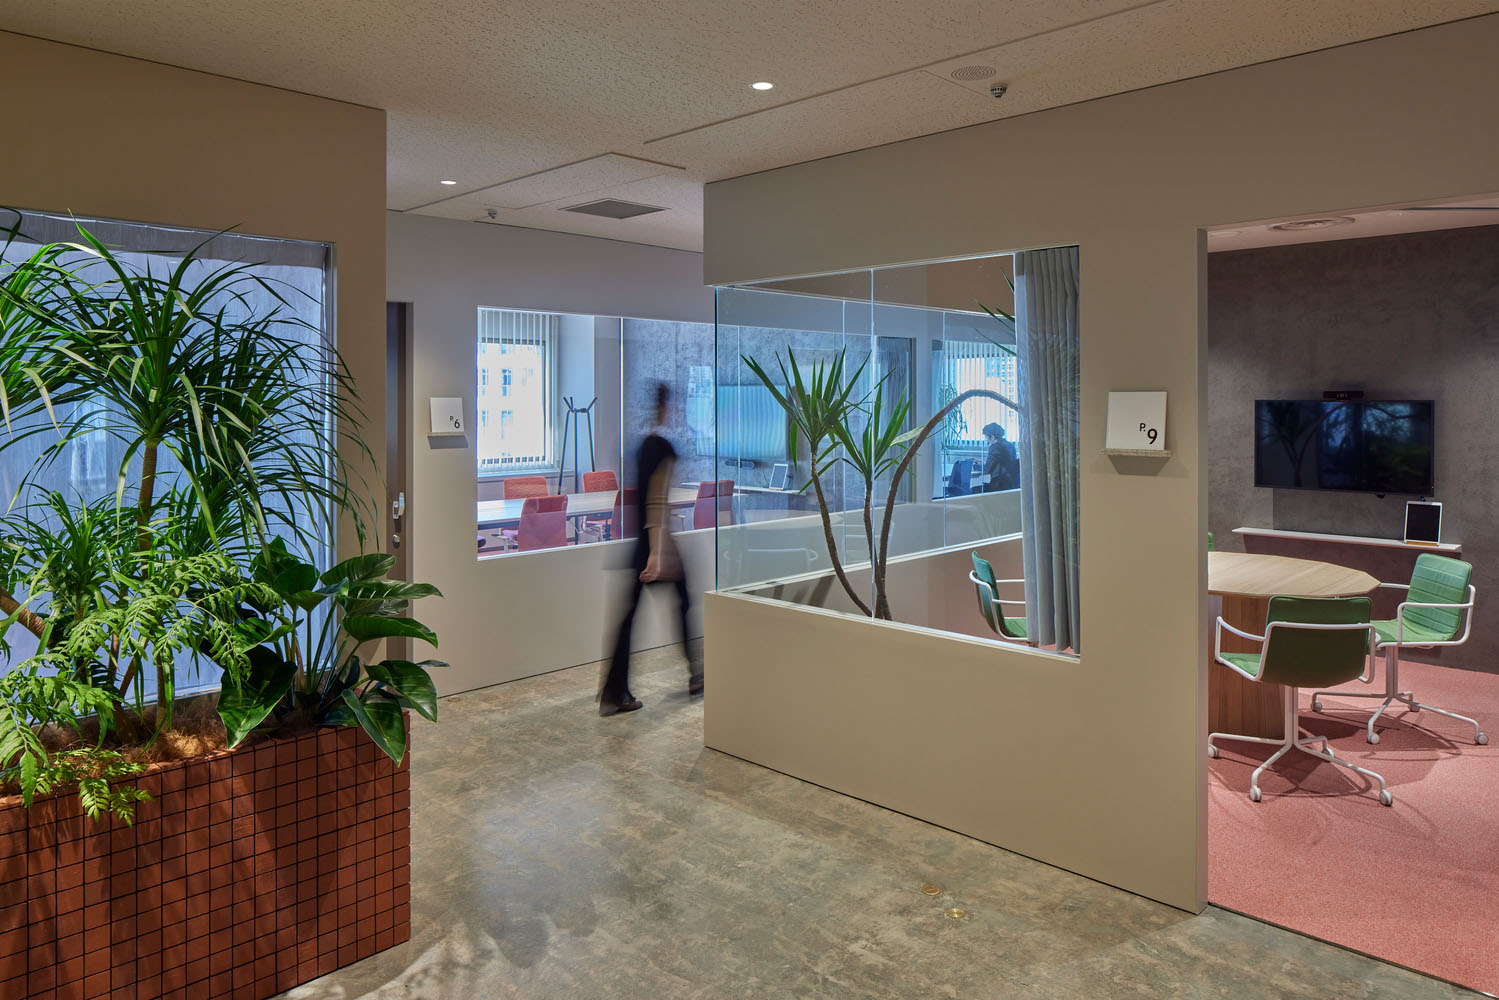 办公室设计,办公室设计案例,KOKUYO,日本,Nippan集团总部办公室,东京,工业风办公室